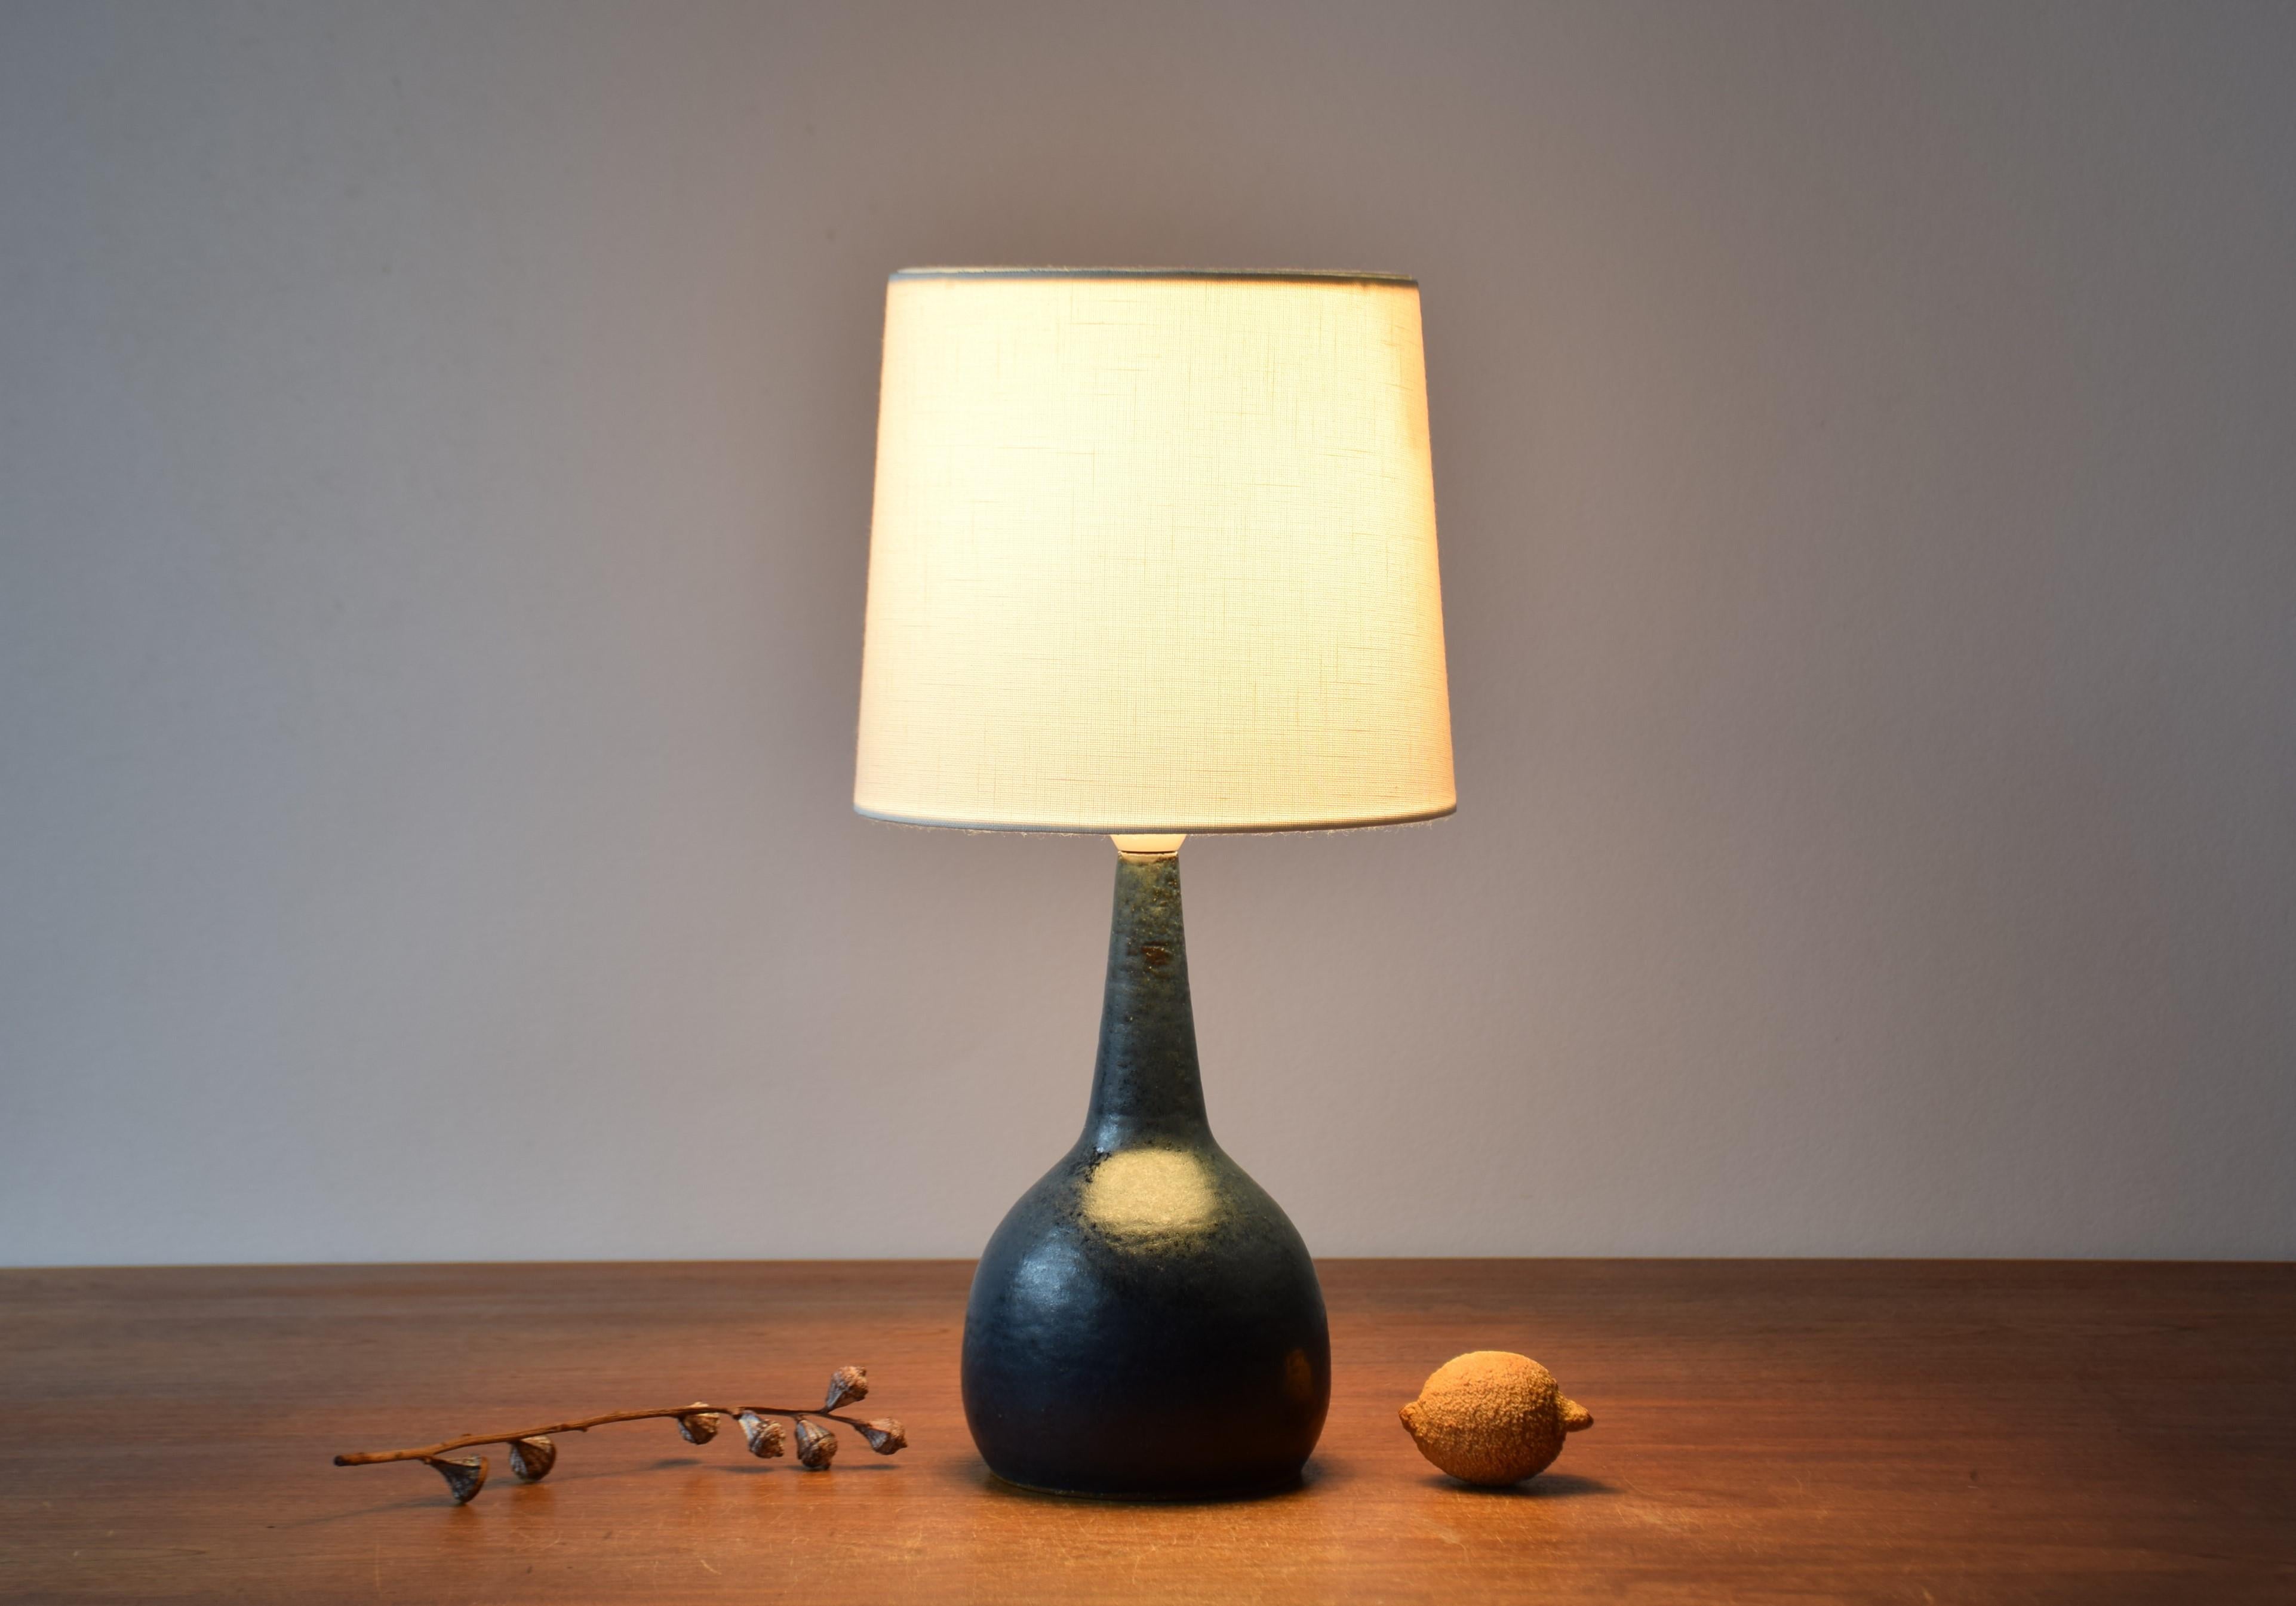 Lampe de table sculpturale en céramique danoise du milieu du siècle dernier, conçue par Per Linnemann-Schmidt pour Palshus. Fabriqué vers les années 1960. 

La lampe est fabriquée en argile chamottée et recouverte d'une glaçure bleu nuit avec des